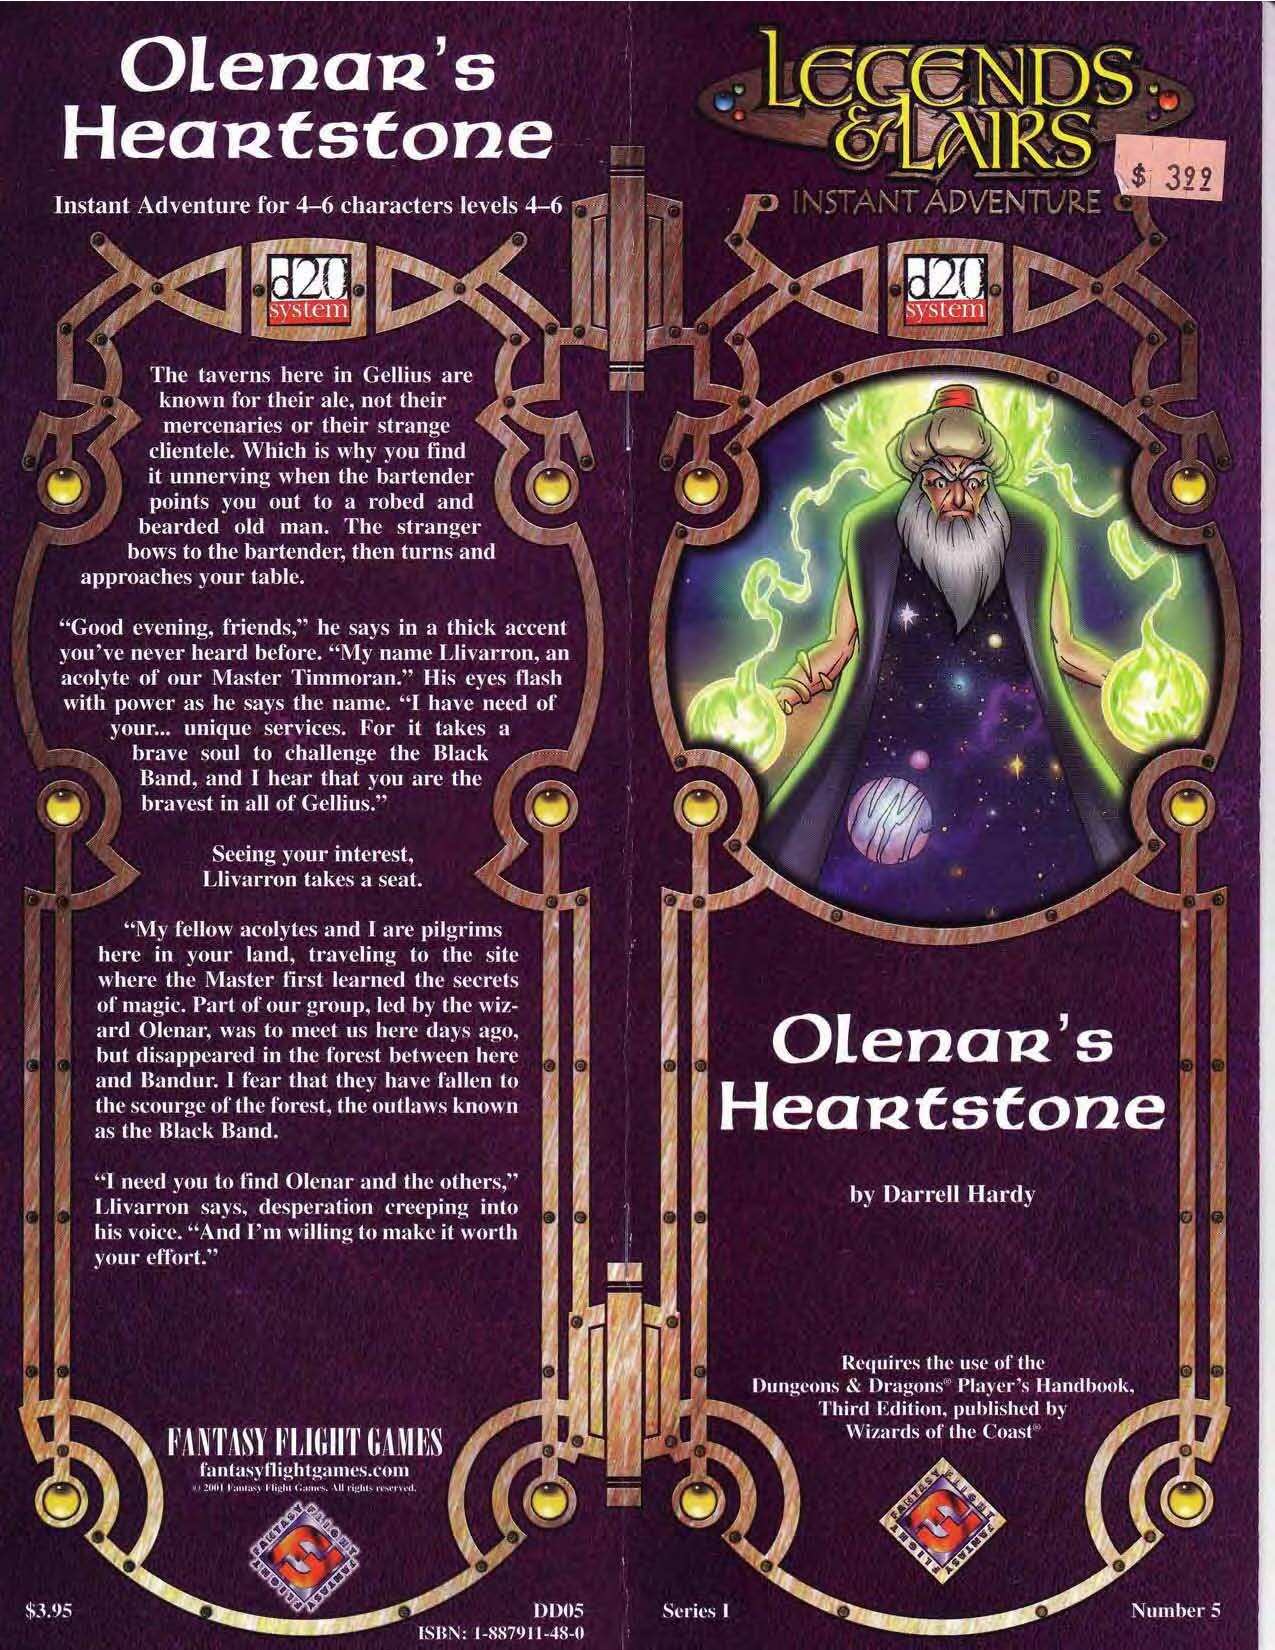 Olenar's Heartstone